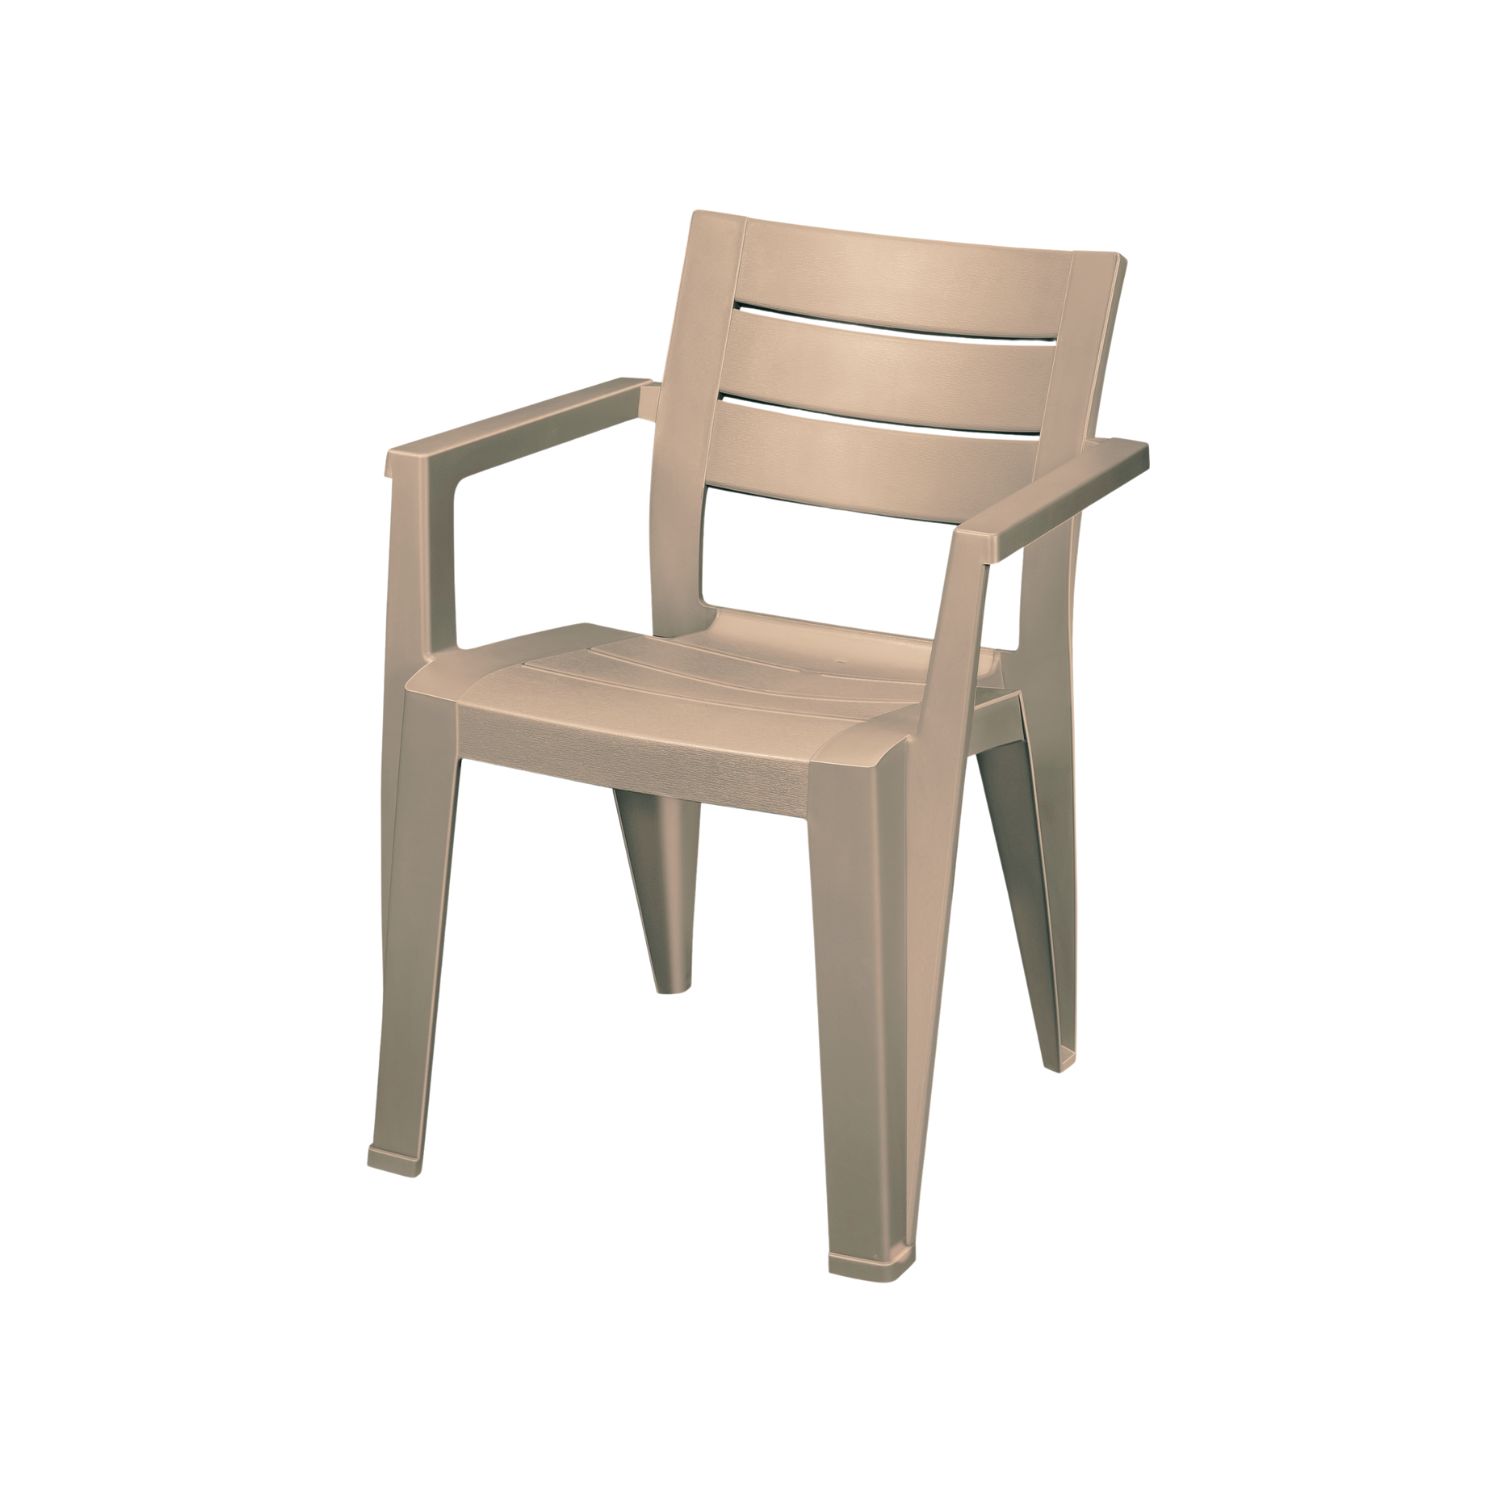 Кресло садовое Elfplast Palermo искусственный ротанг 57х63х78, набор 2 шт., цвет бежевый